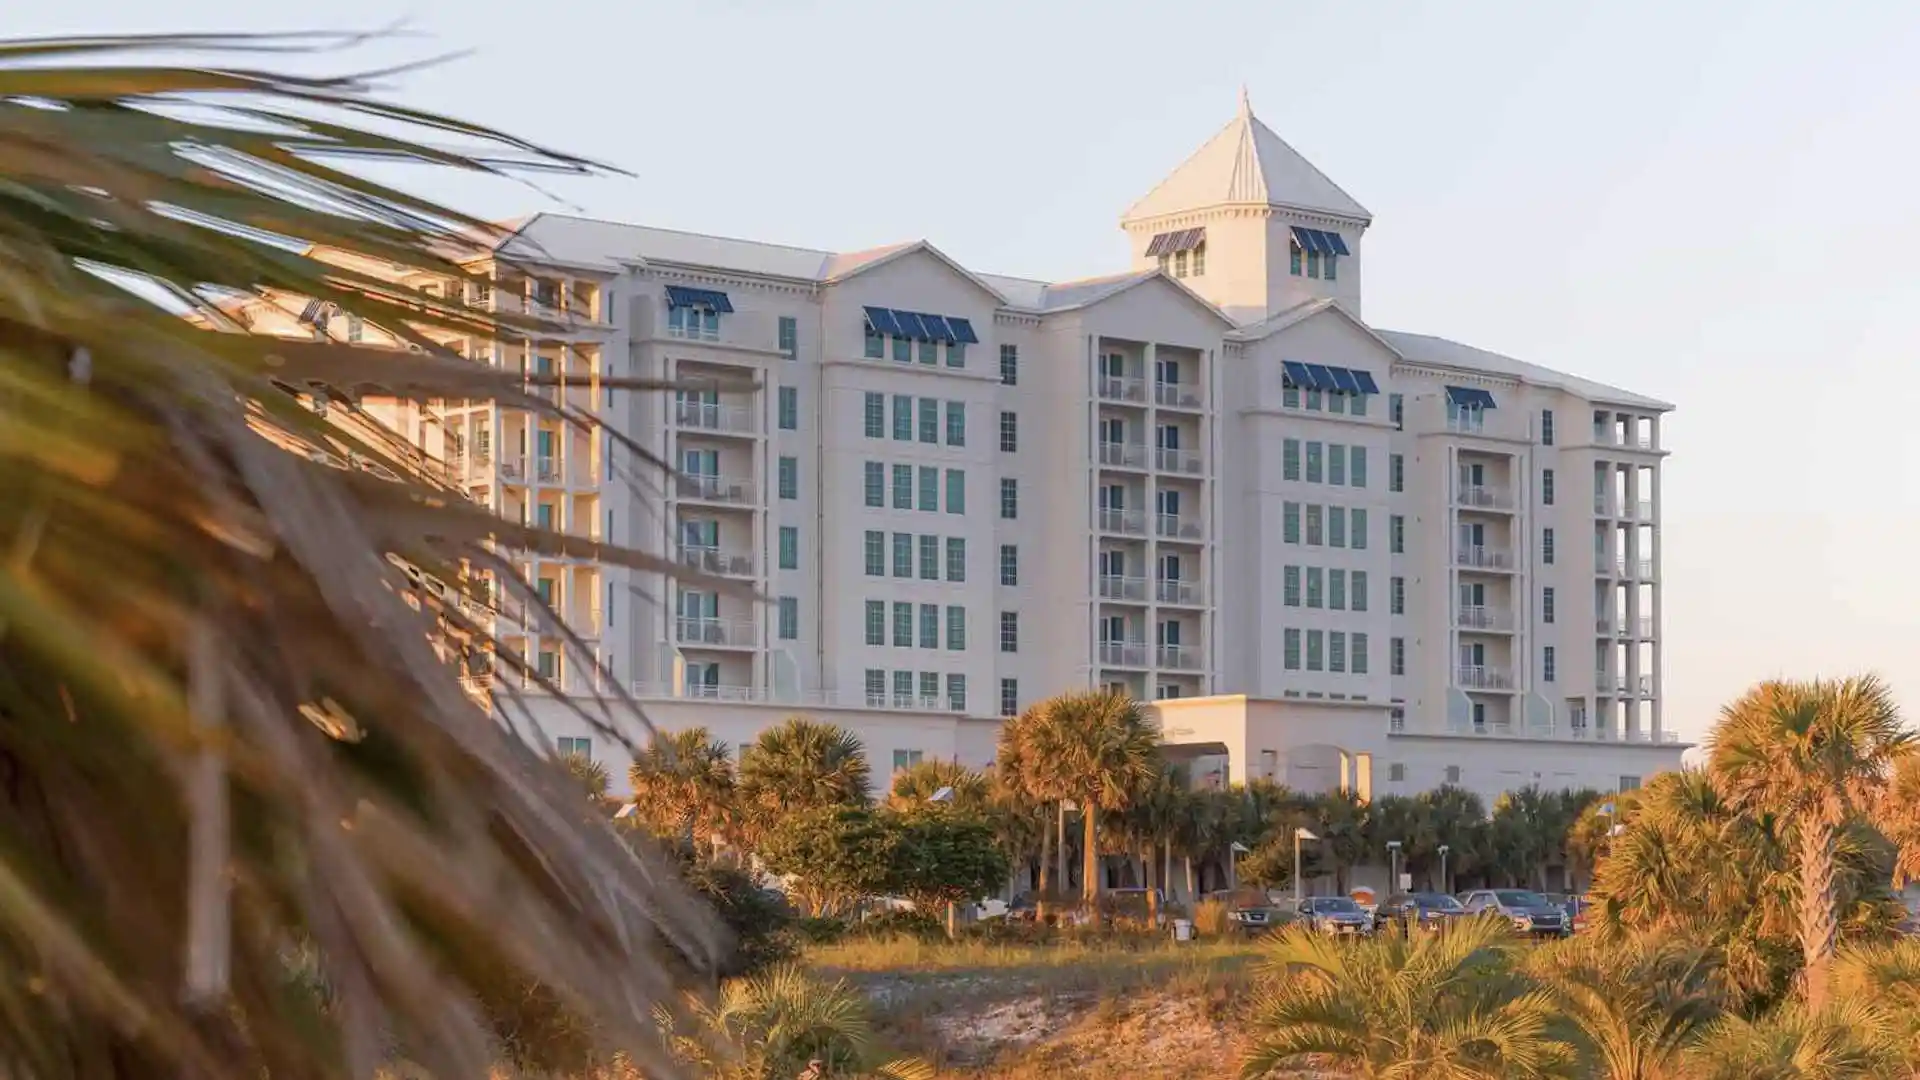 Pensacola Beach Resort: el nuevo hotel favorito en Florida en 2023